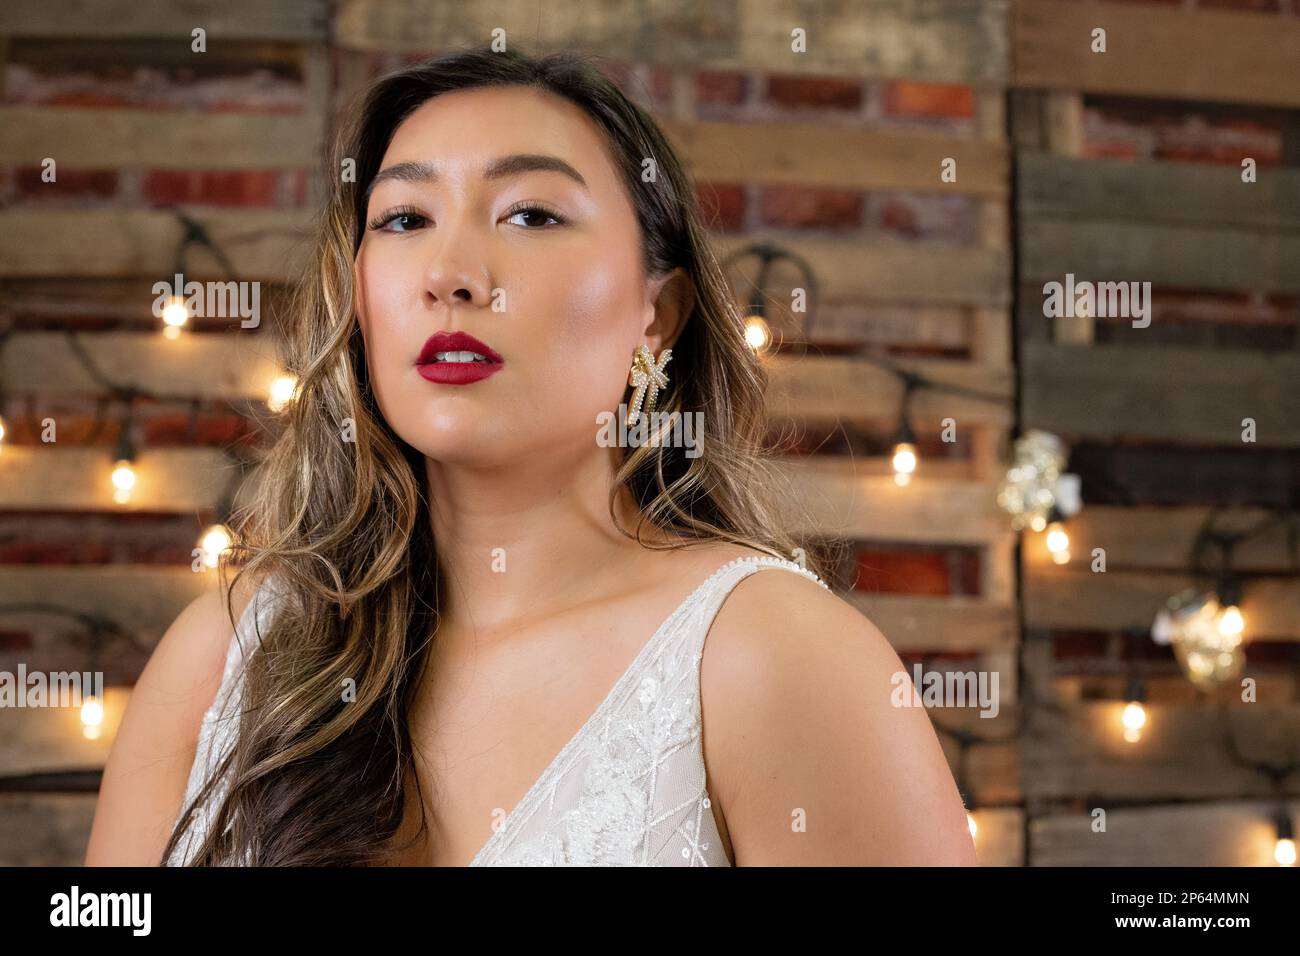 Model Posing in Wedding Scene Stock Photo